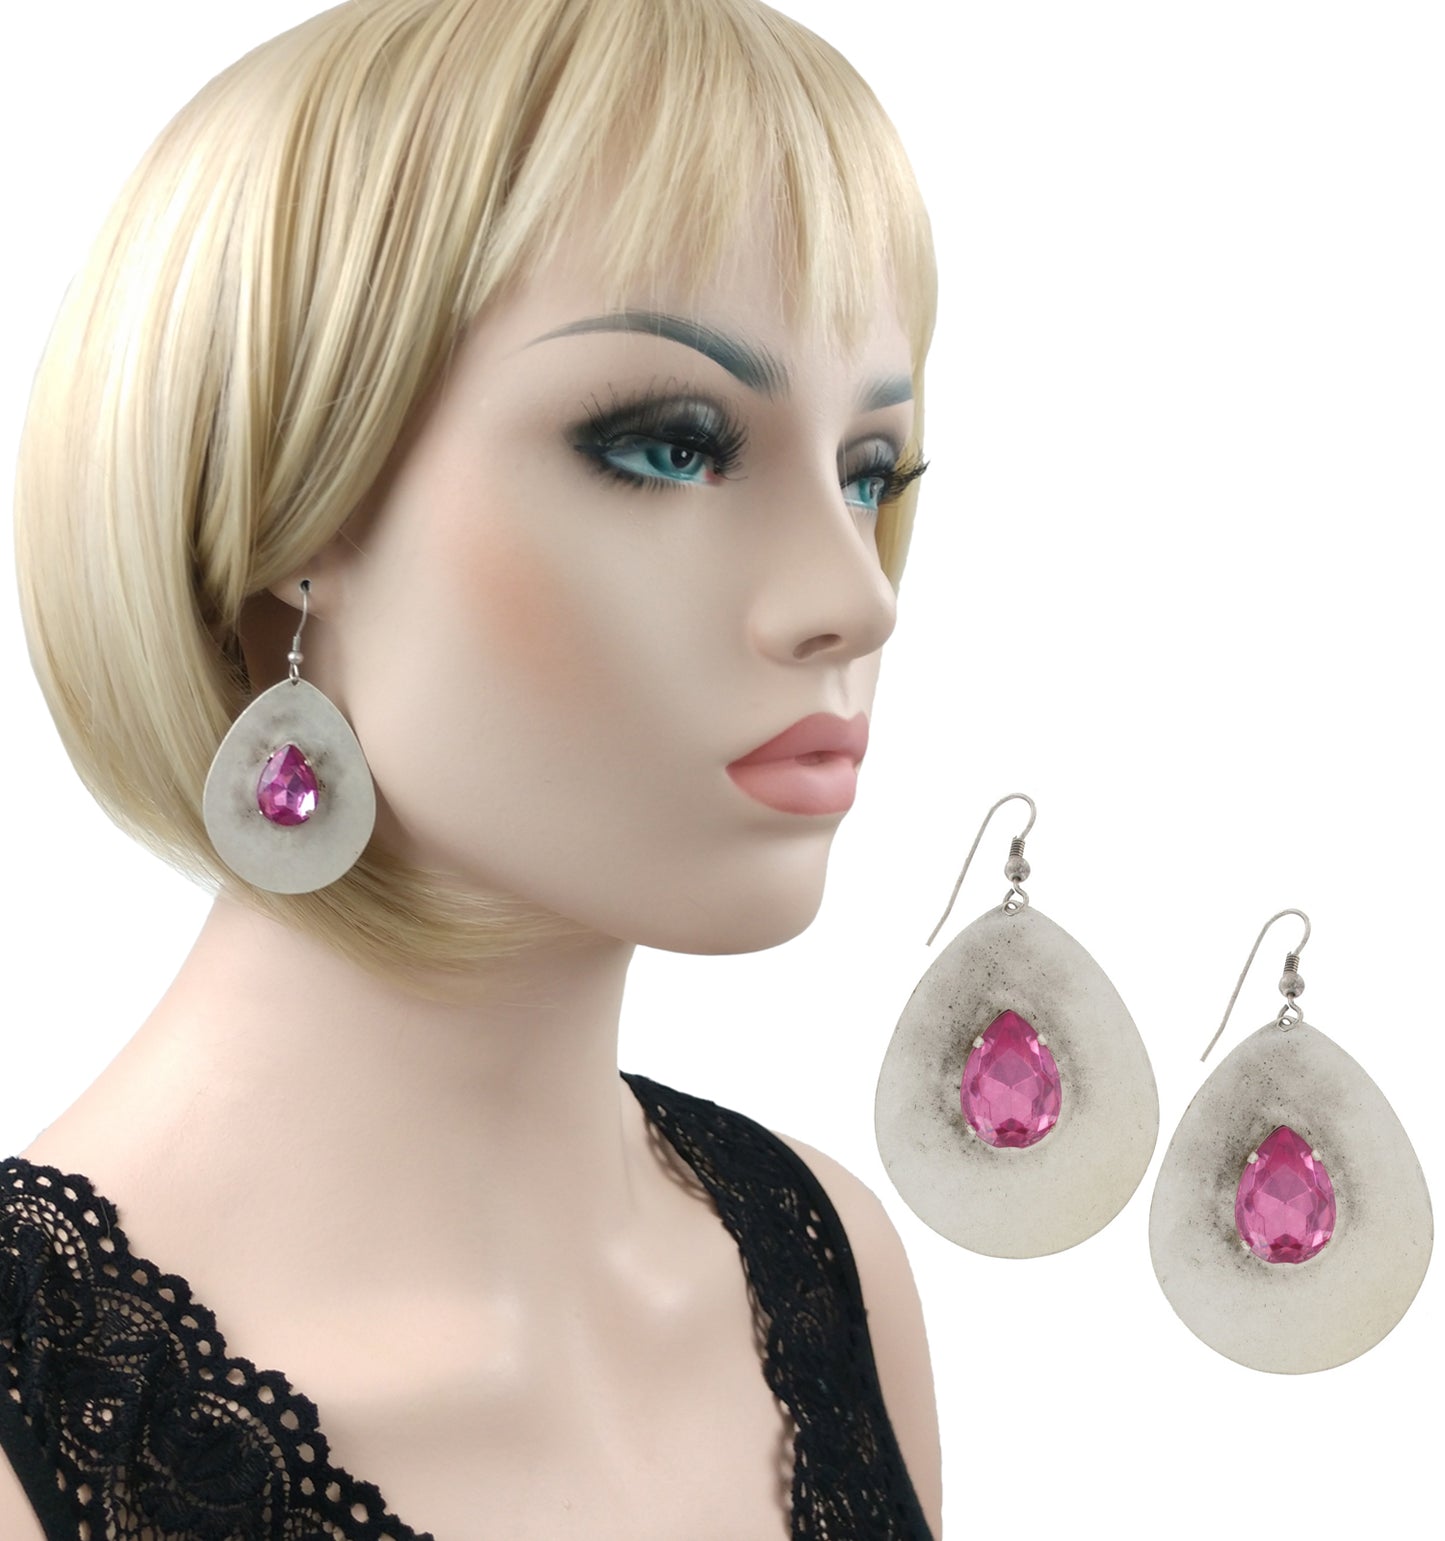 Large Pink Jewel Teardrop Dangle Earrings Pierced 2.5" - Distressed Silver Tone